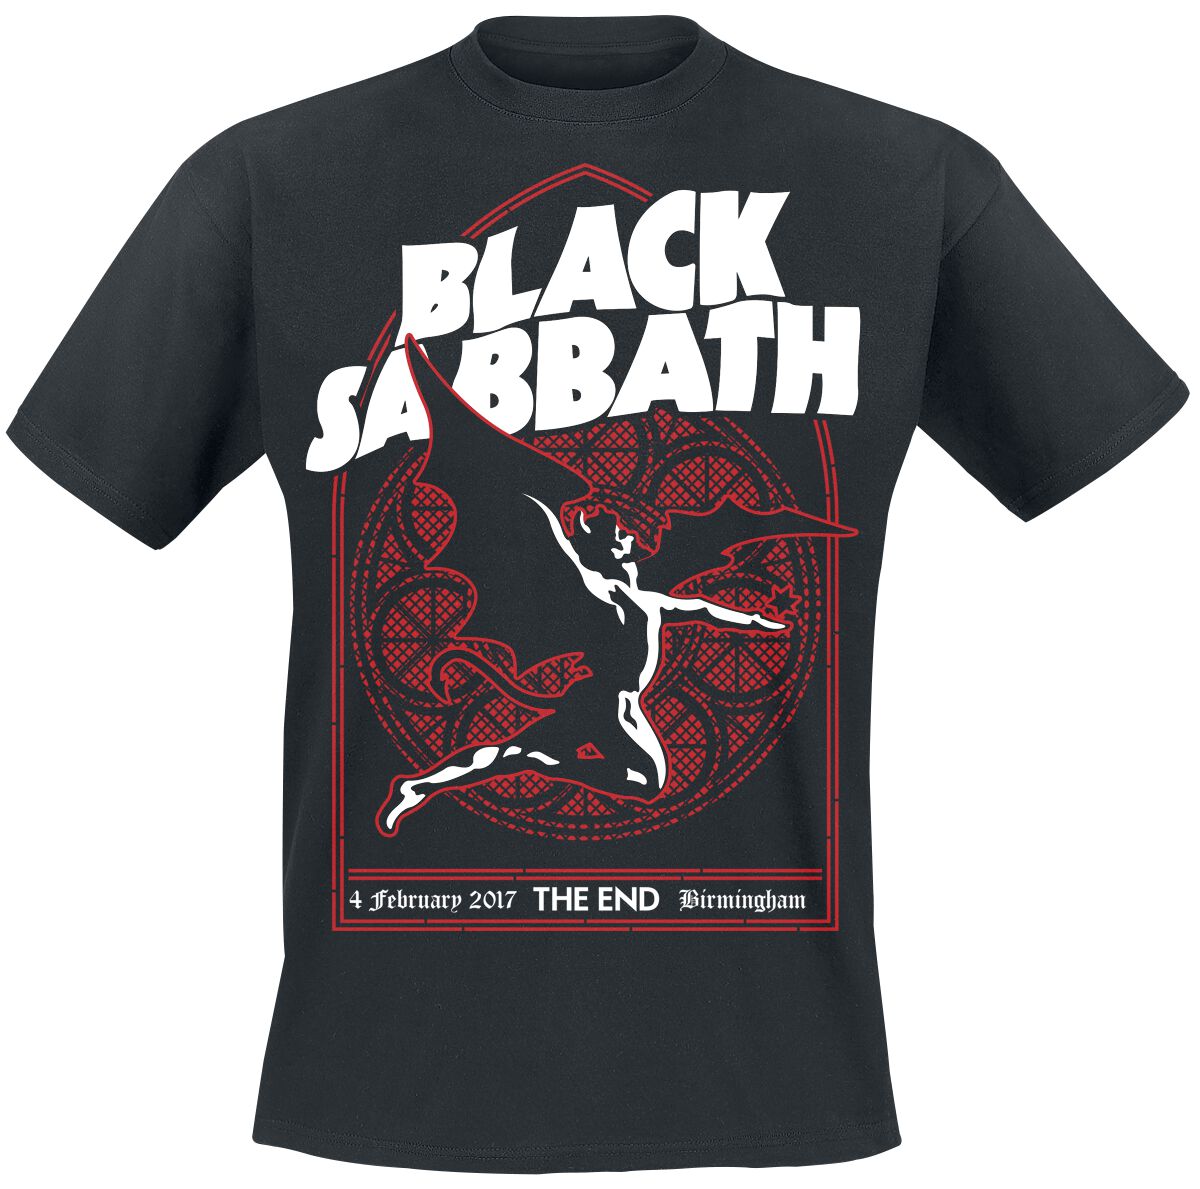 Black Sabbath T-Shirt - The End Church Window - M bis XXL - für Männer - Größe XXL - schwarz  - Lizenziertes Merchandise!